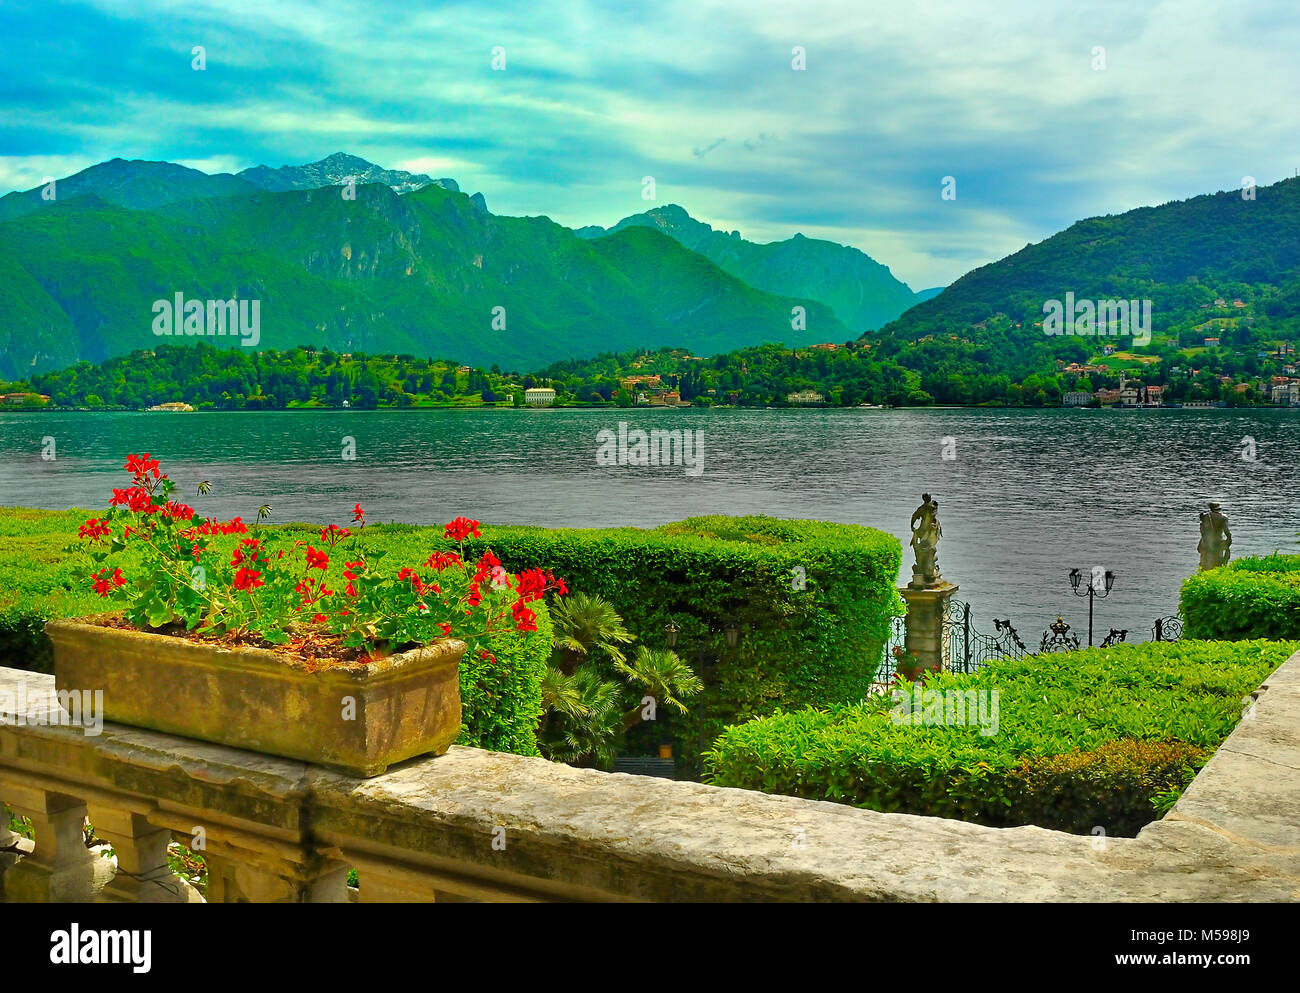 Scenic view of Lake Como from the gardens of Villa Carlotta, Tremezzo, Italy Stock Photo